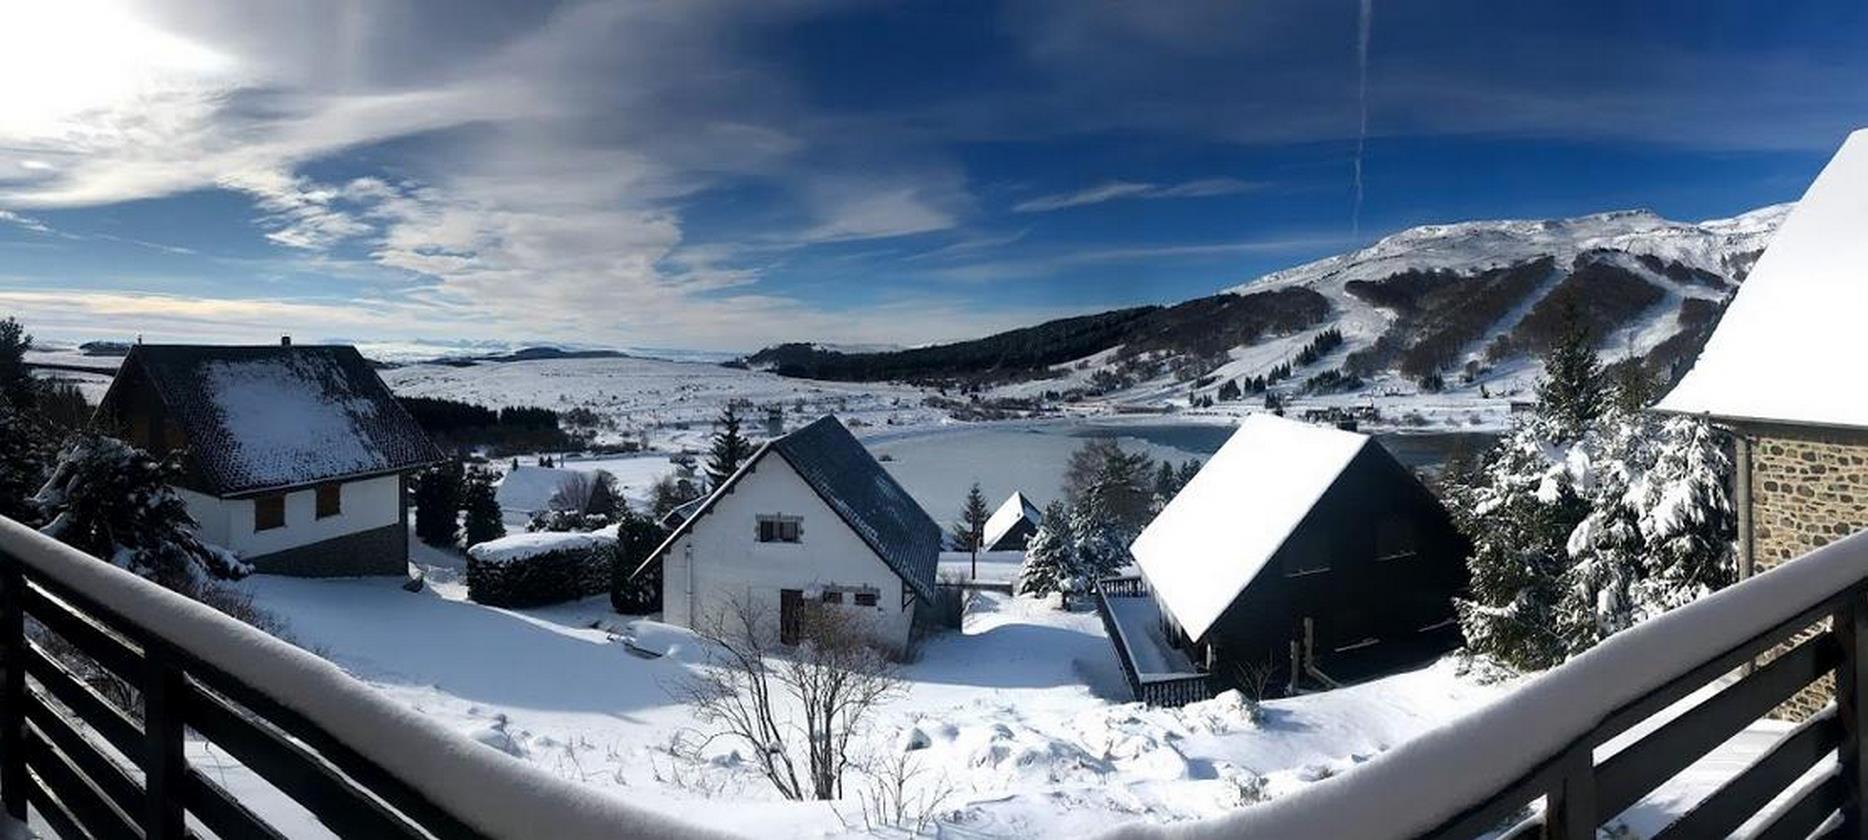 Chalet Super Besse - belle vue du Balcon du chalet sur Le lac des hermines et le pistes de ski